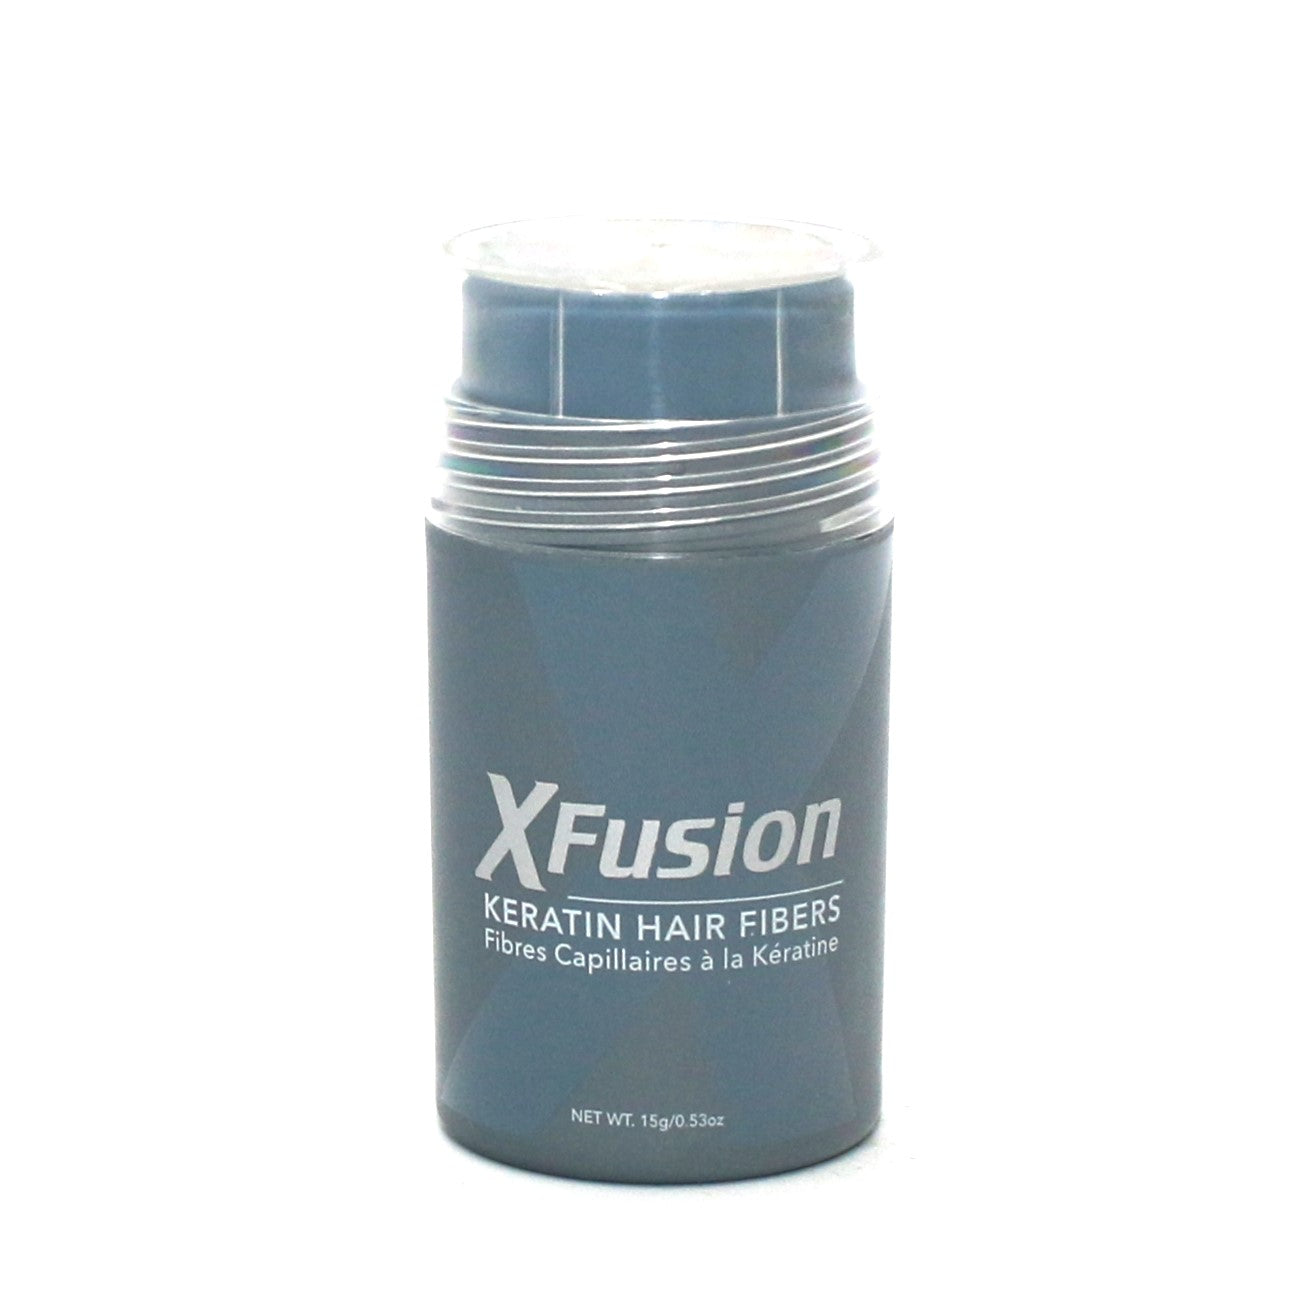 X Fusion Keratin Hair Fibers 0.53 oz